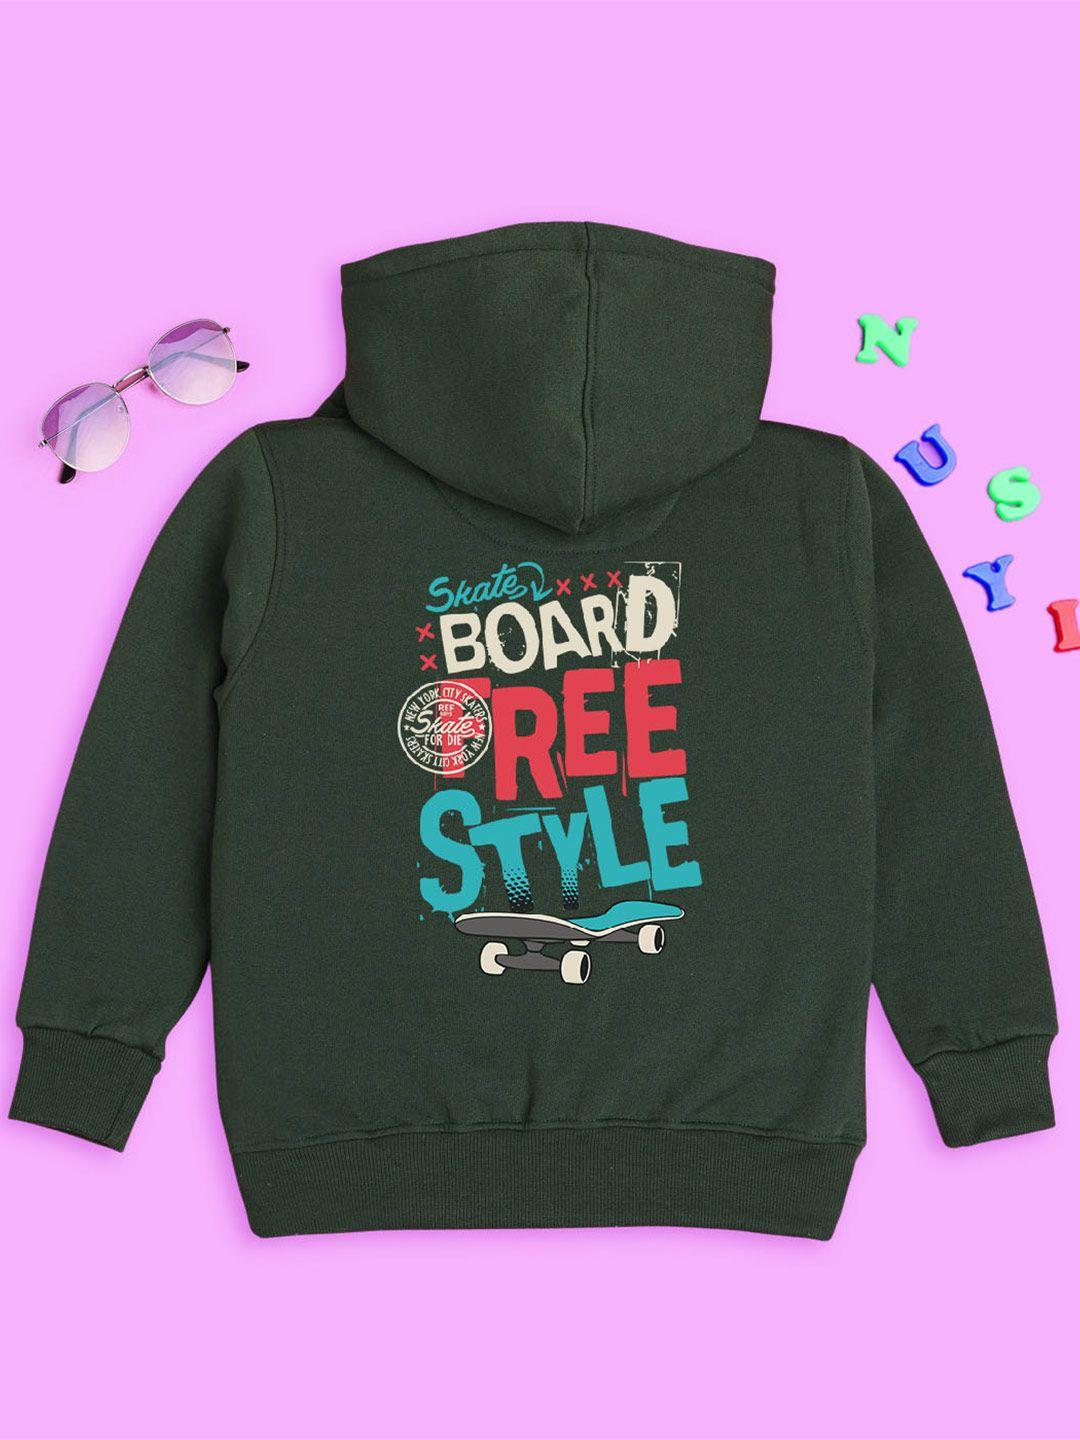 nusyl kids typography printed hooded sweatshirt